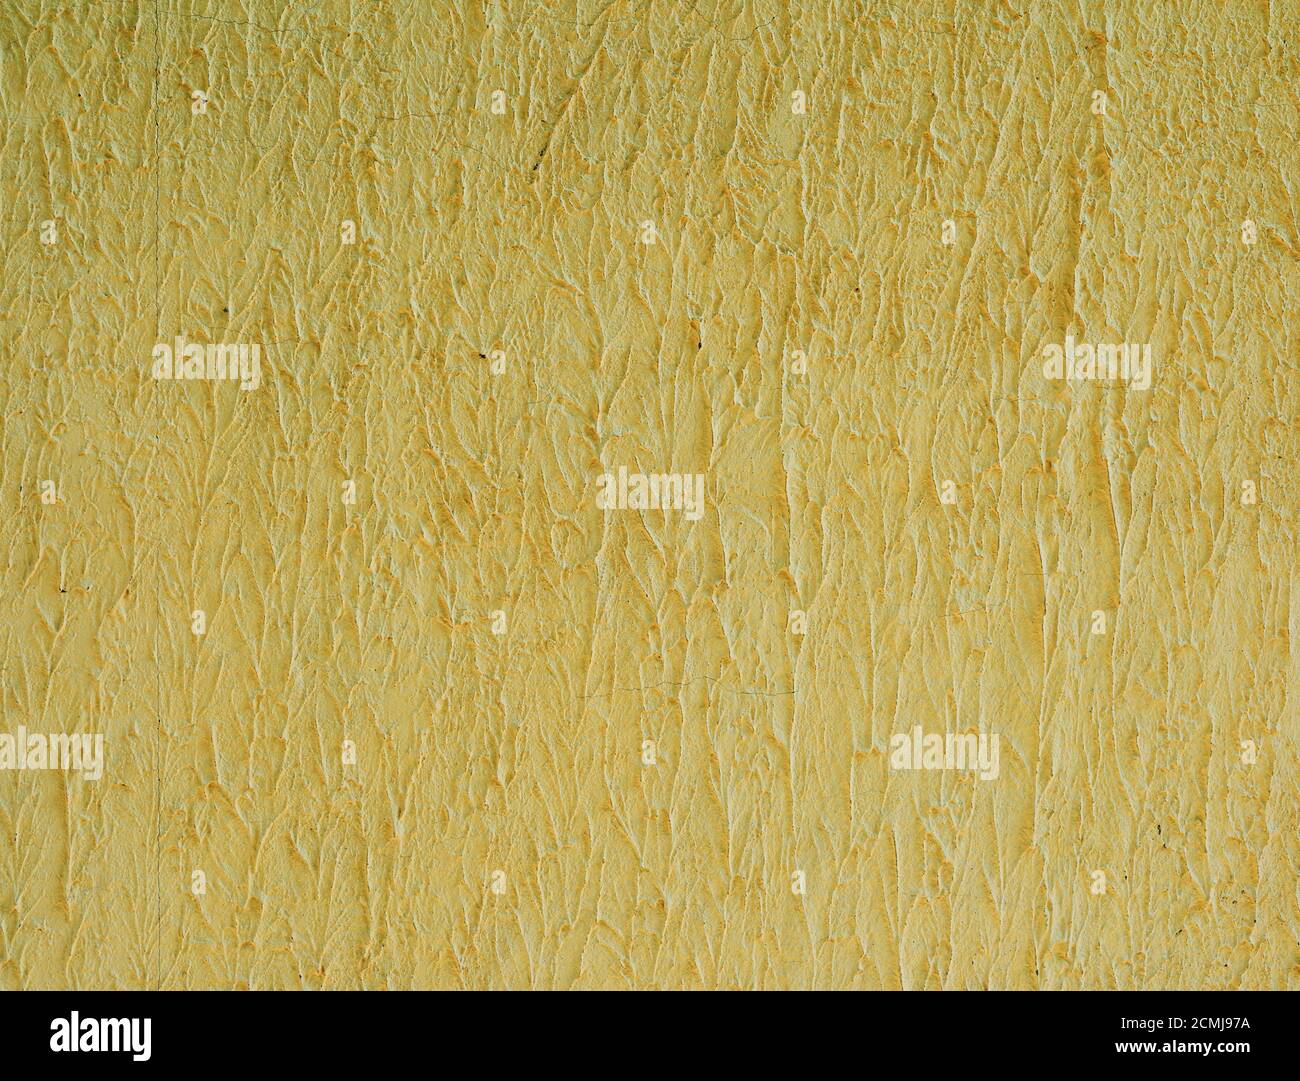 Frammento di parete gialla di cemento, struttura ondulata Foto Stock